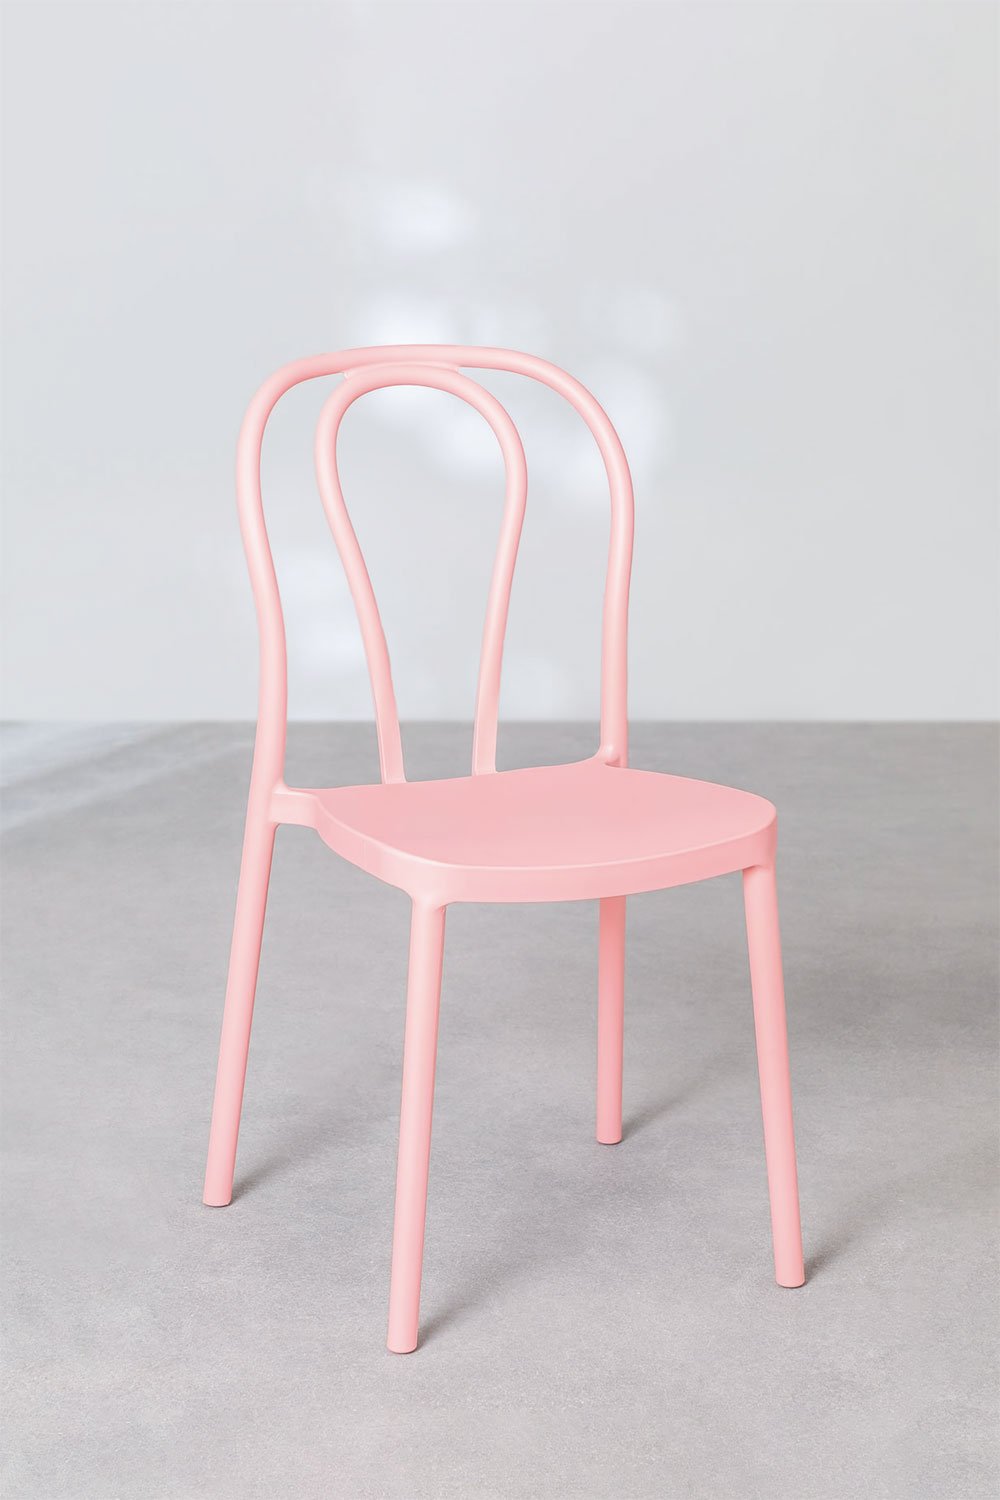 Mizzi Stackable Garden Chair, gallery image 1